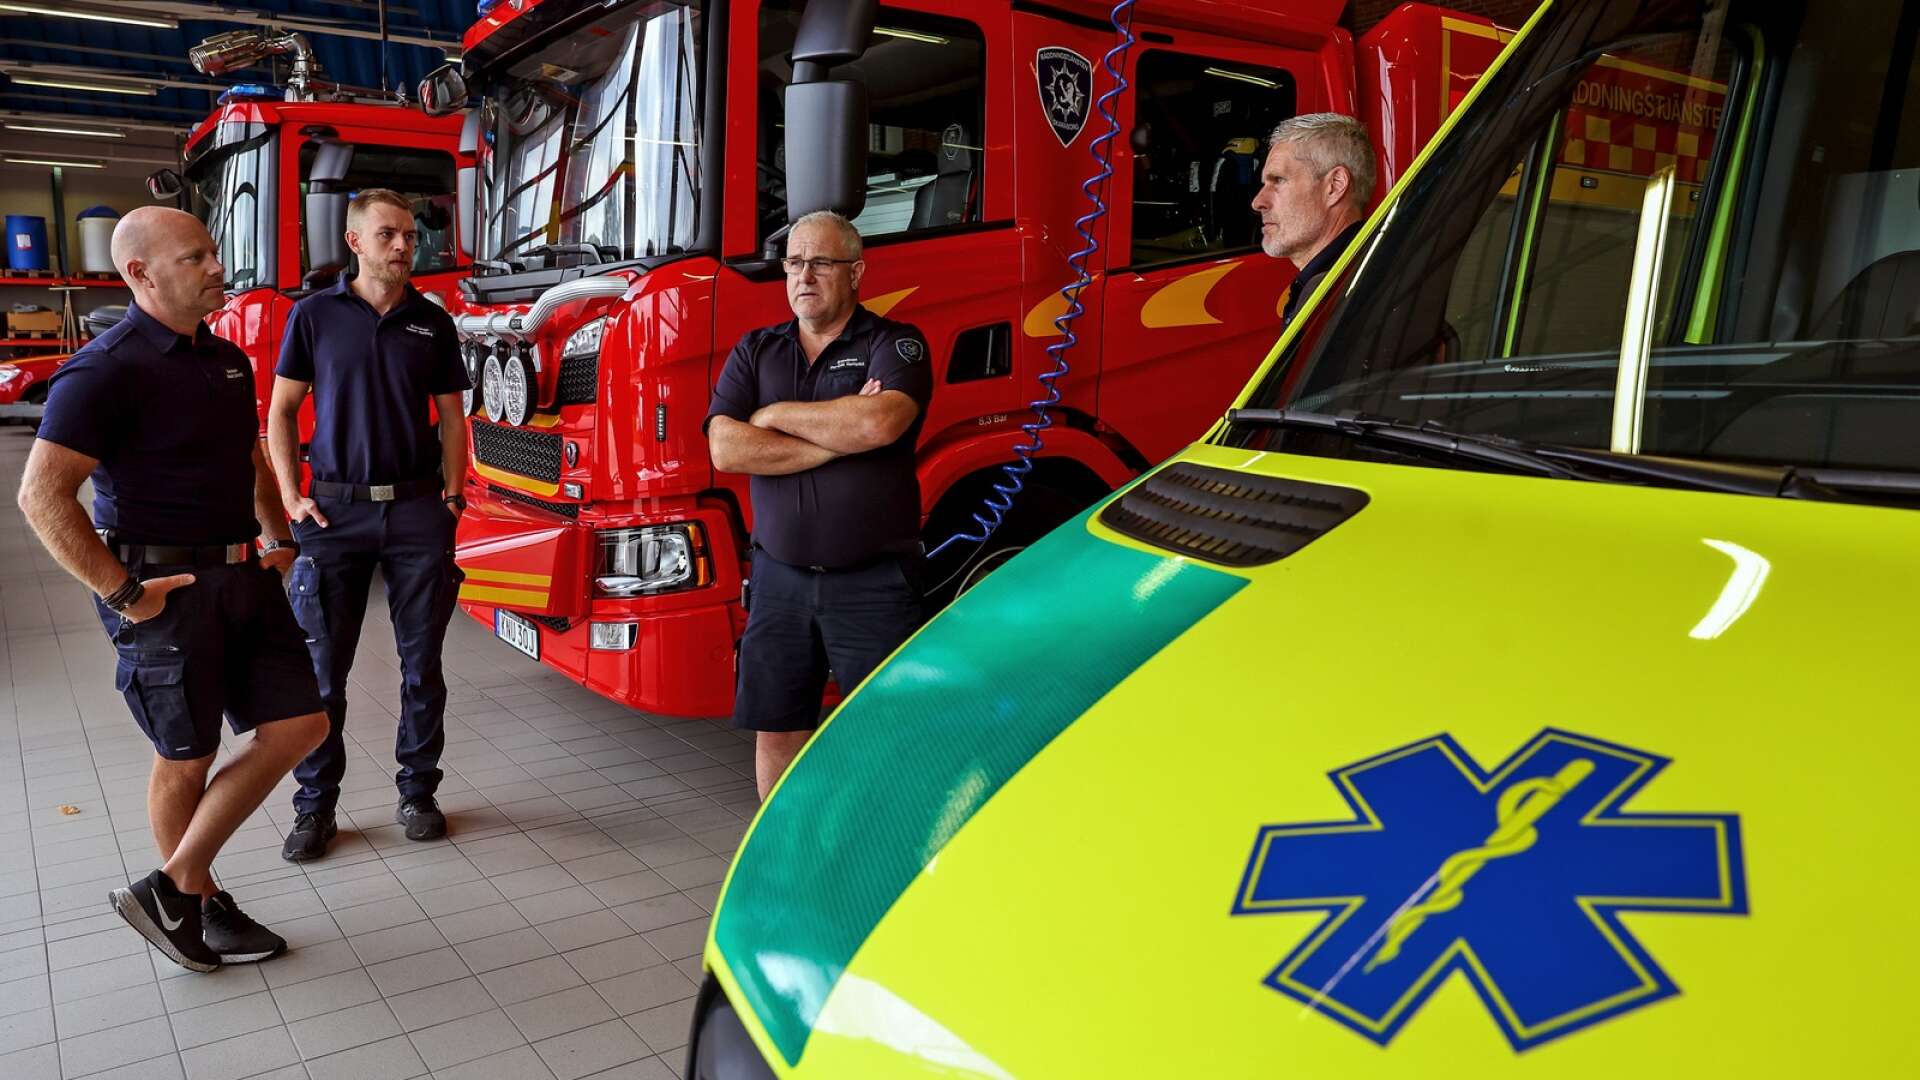 ”Tredje man blir lidande.” Det är brandmännens slutsats när det gäller nedläggningen av akuten i Lidköping. De befarar längre väntan på ambulans vid till exempel hjärtstopp, vilket i sin tur påverkar räddningstjänstens möjligheter att göra insatser på annat håll.